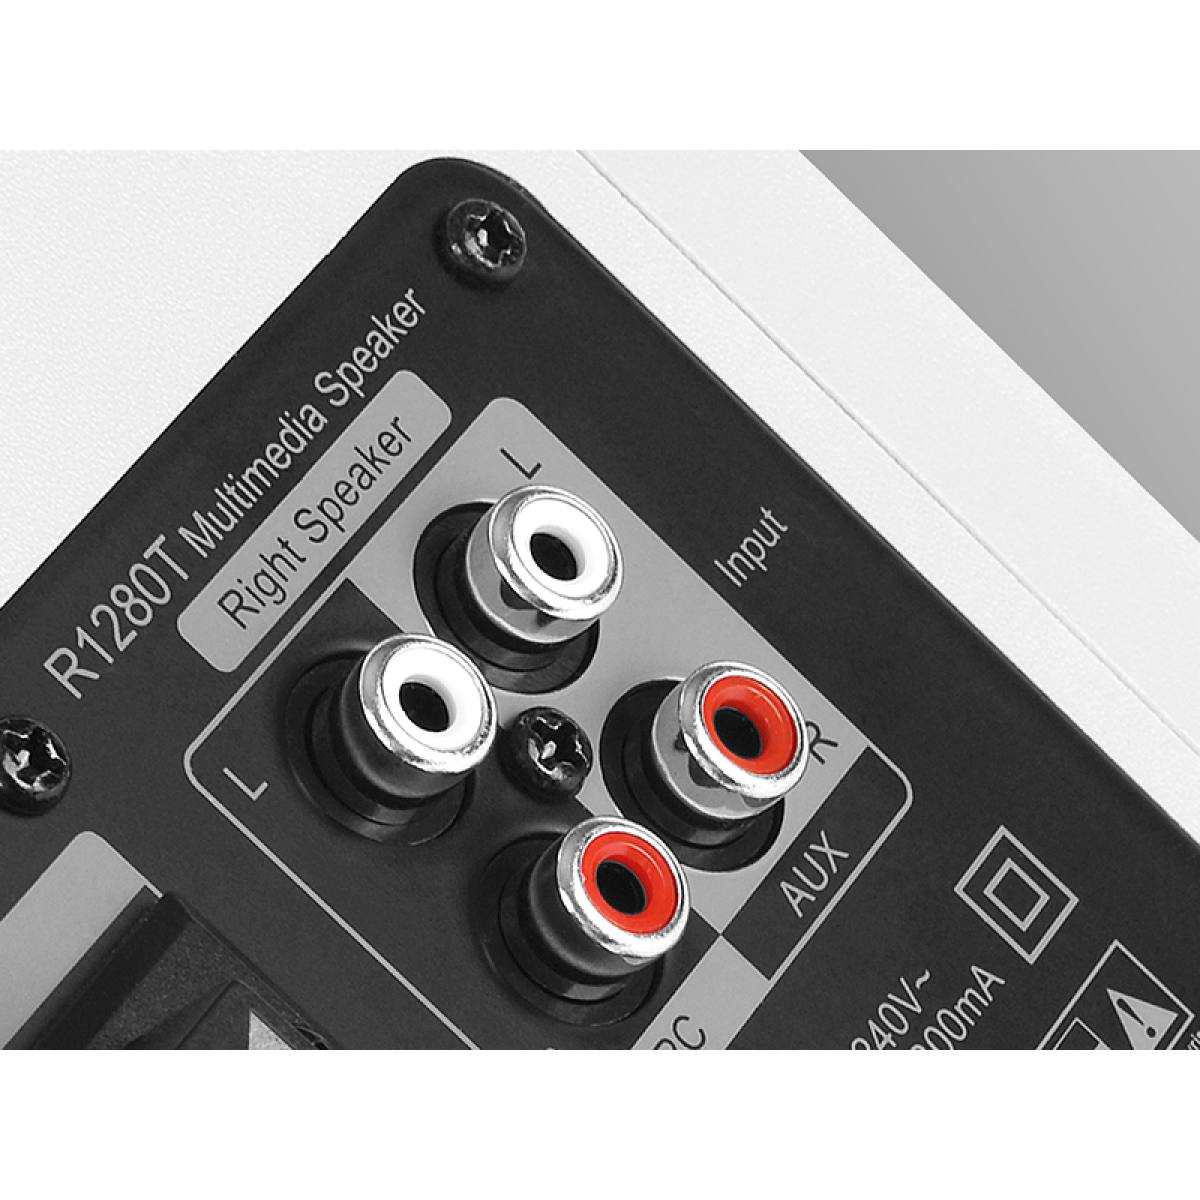 Loa Edifier R1280T | Stereo 2.0